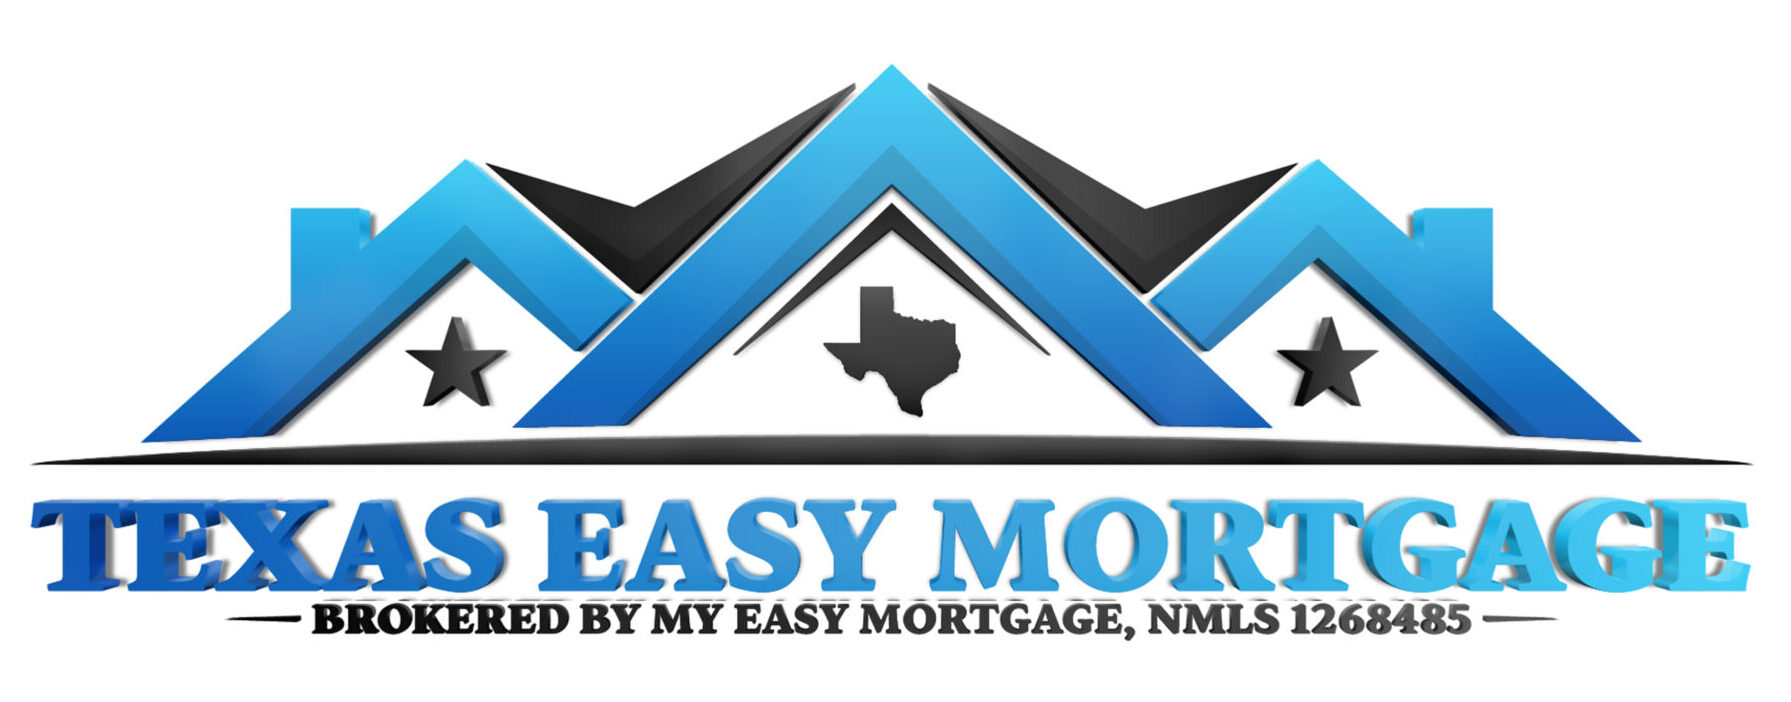 Texas Easy Mortgage